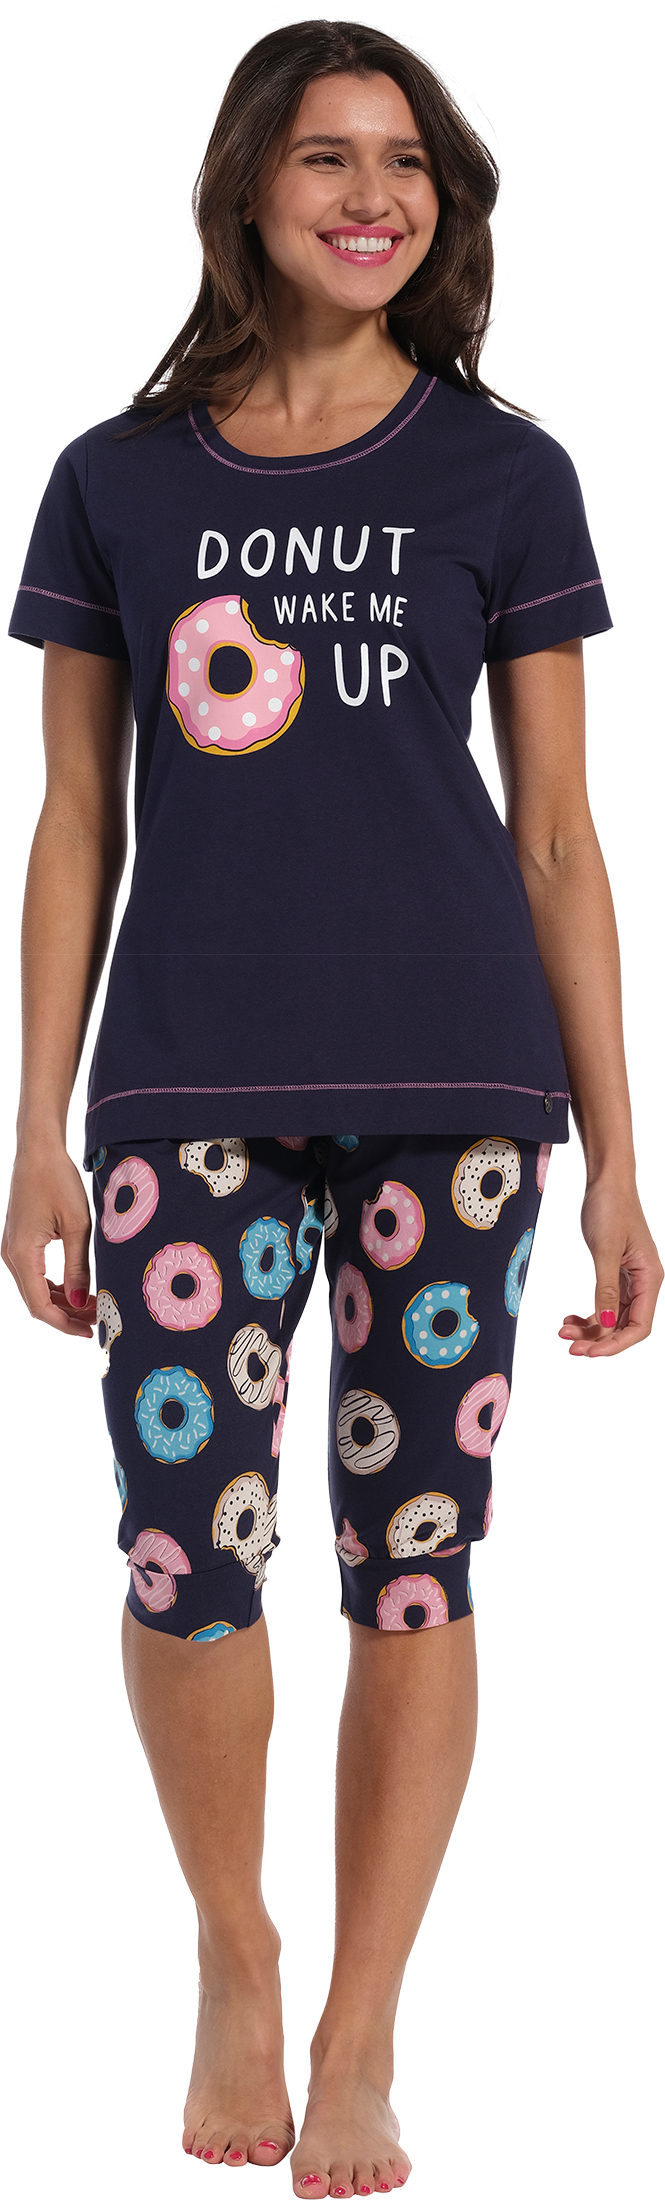 Rebelle Donut- Pyjamaset - Dames – Blauw - Maat 36